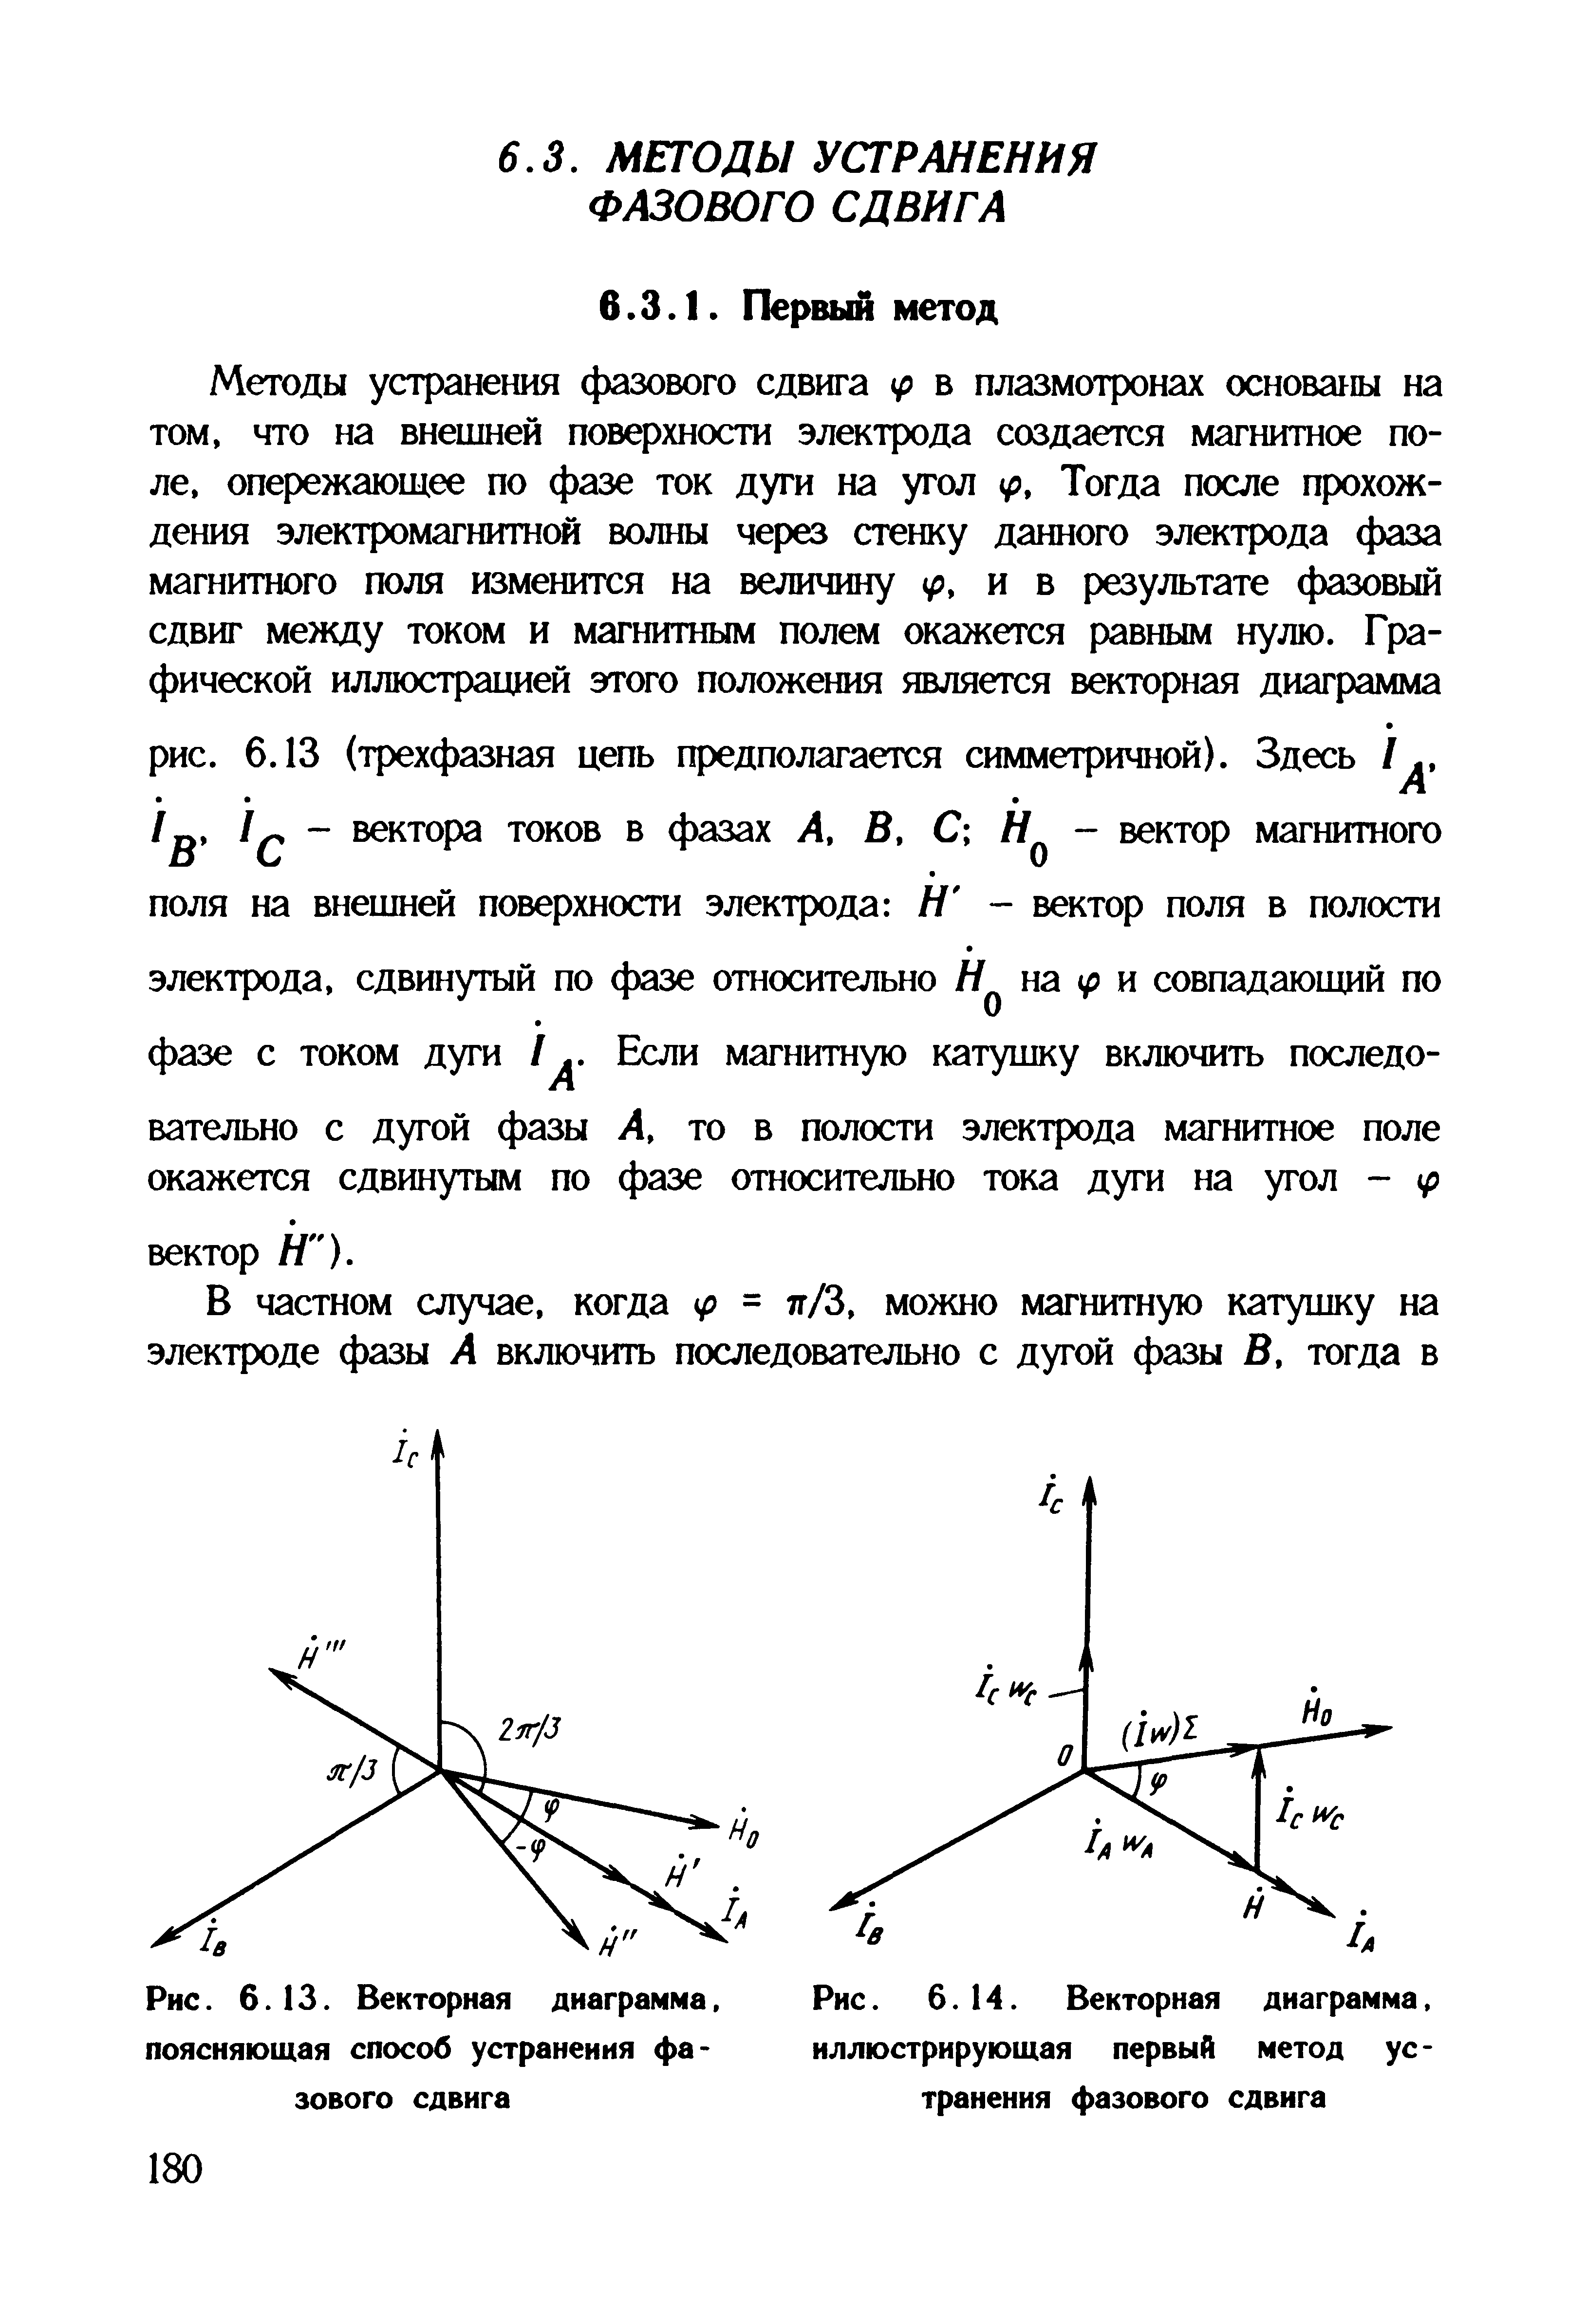 Рис. 6.14. <a href="/info/19381">Векторная диаграмма</a>, иллюстрирующая <a href="/info/562864">первый метод</a> устранения фазового сдвига
